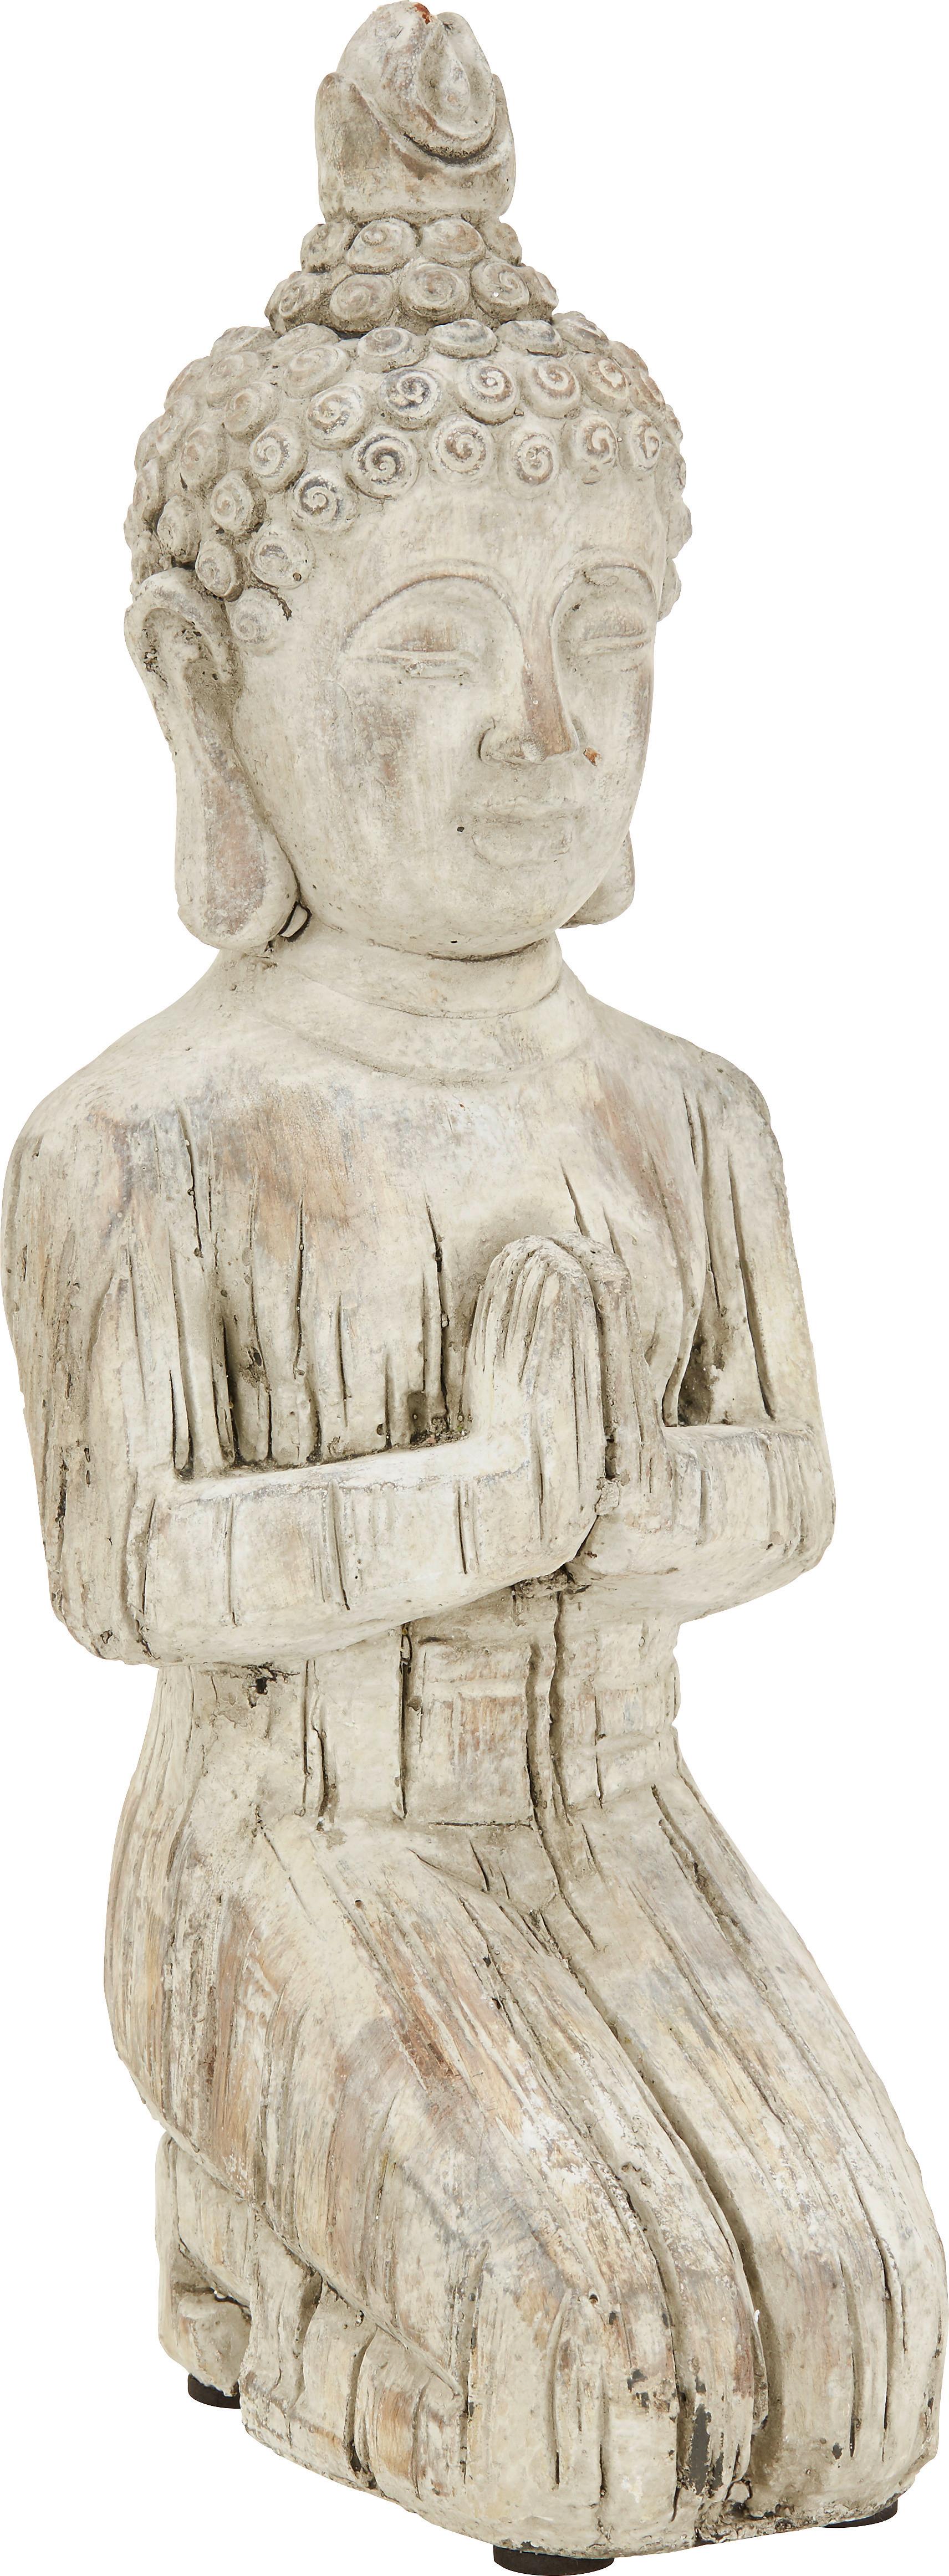 Buddha knieend aus Stein - Braun, KONVENTIONELL, Stein (19/15/42,5cm) - Modern Living